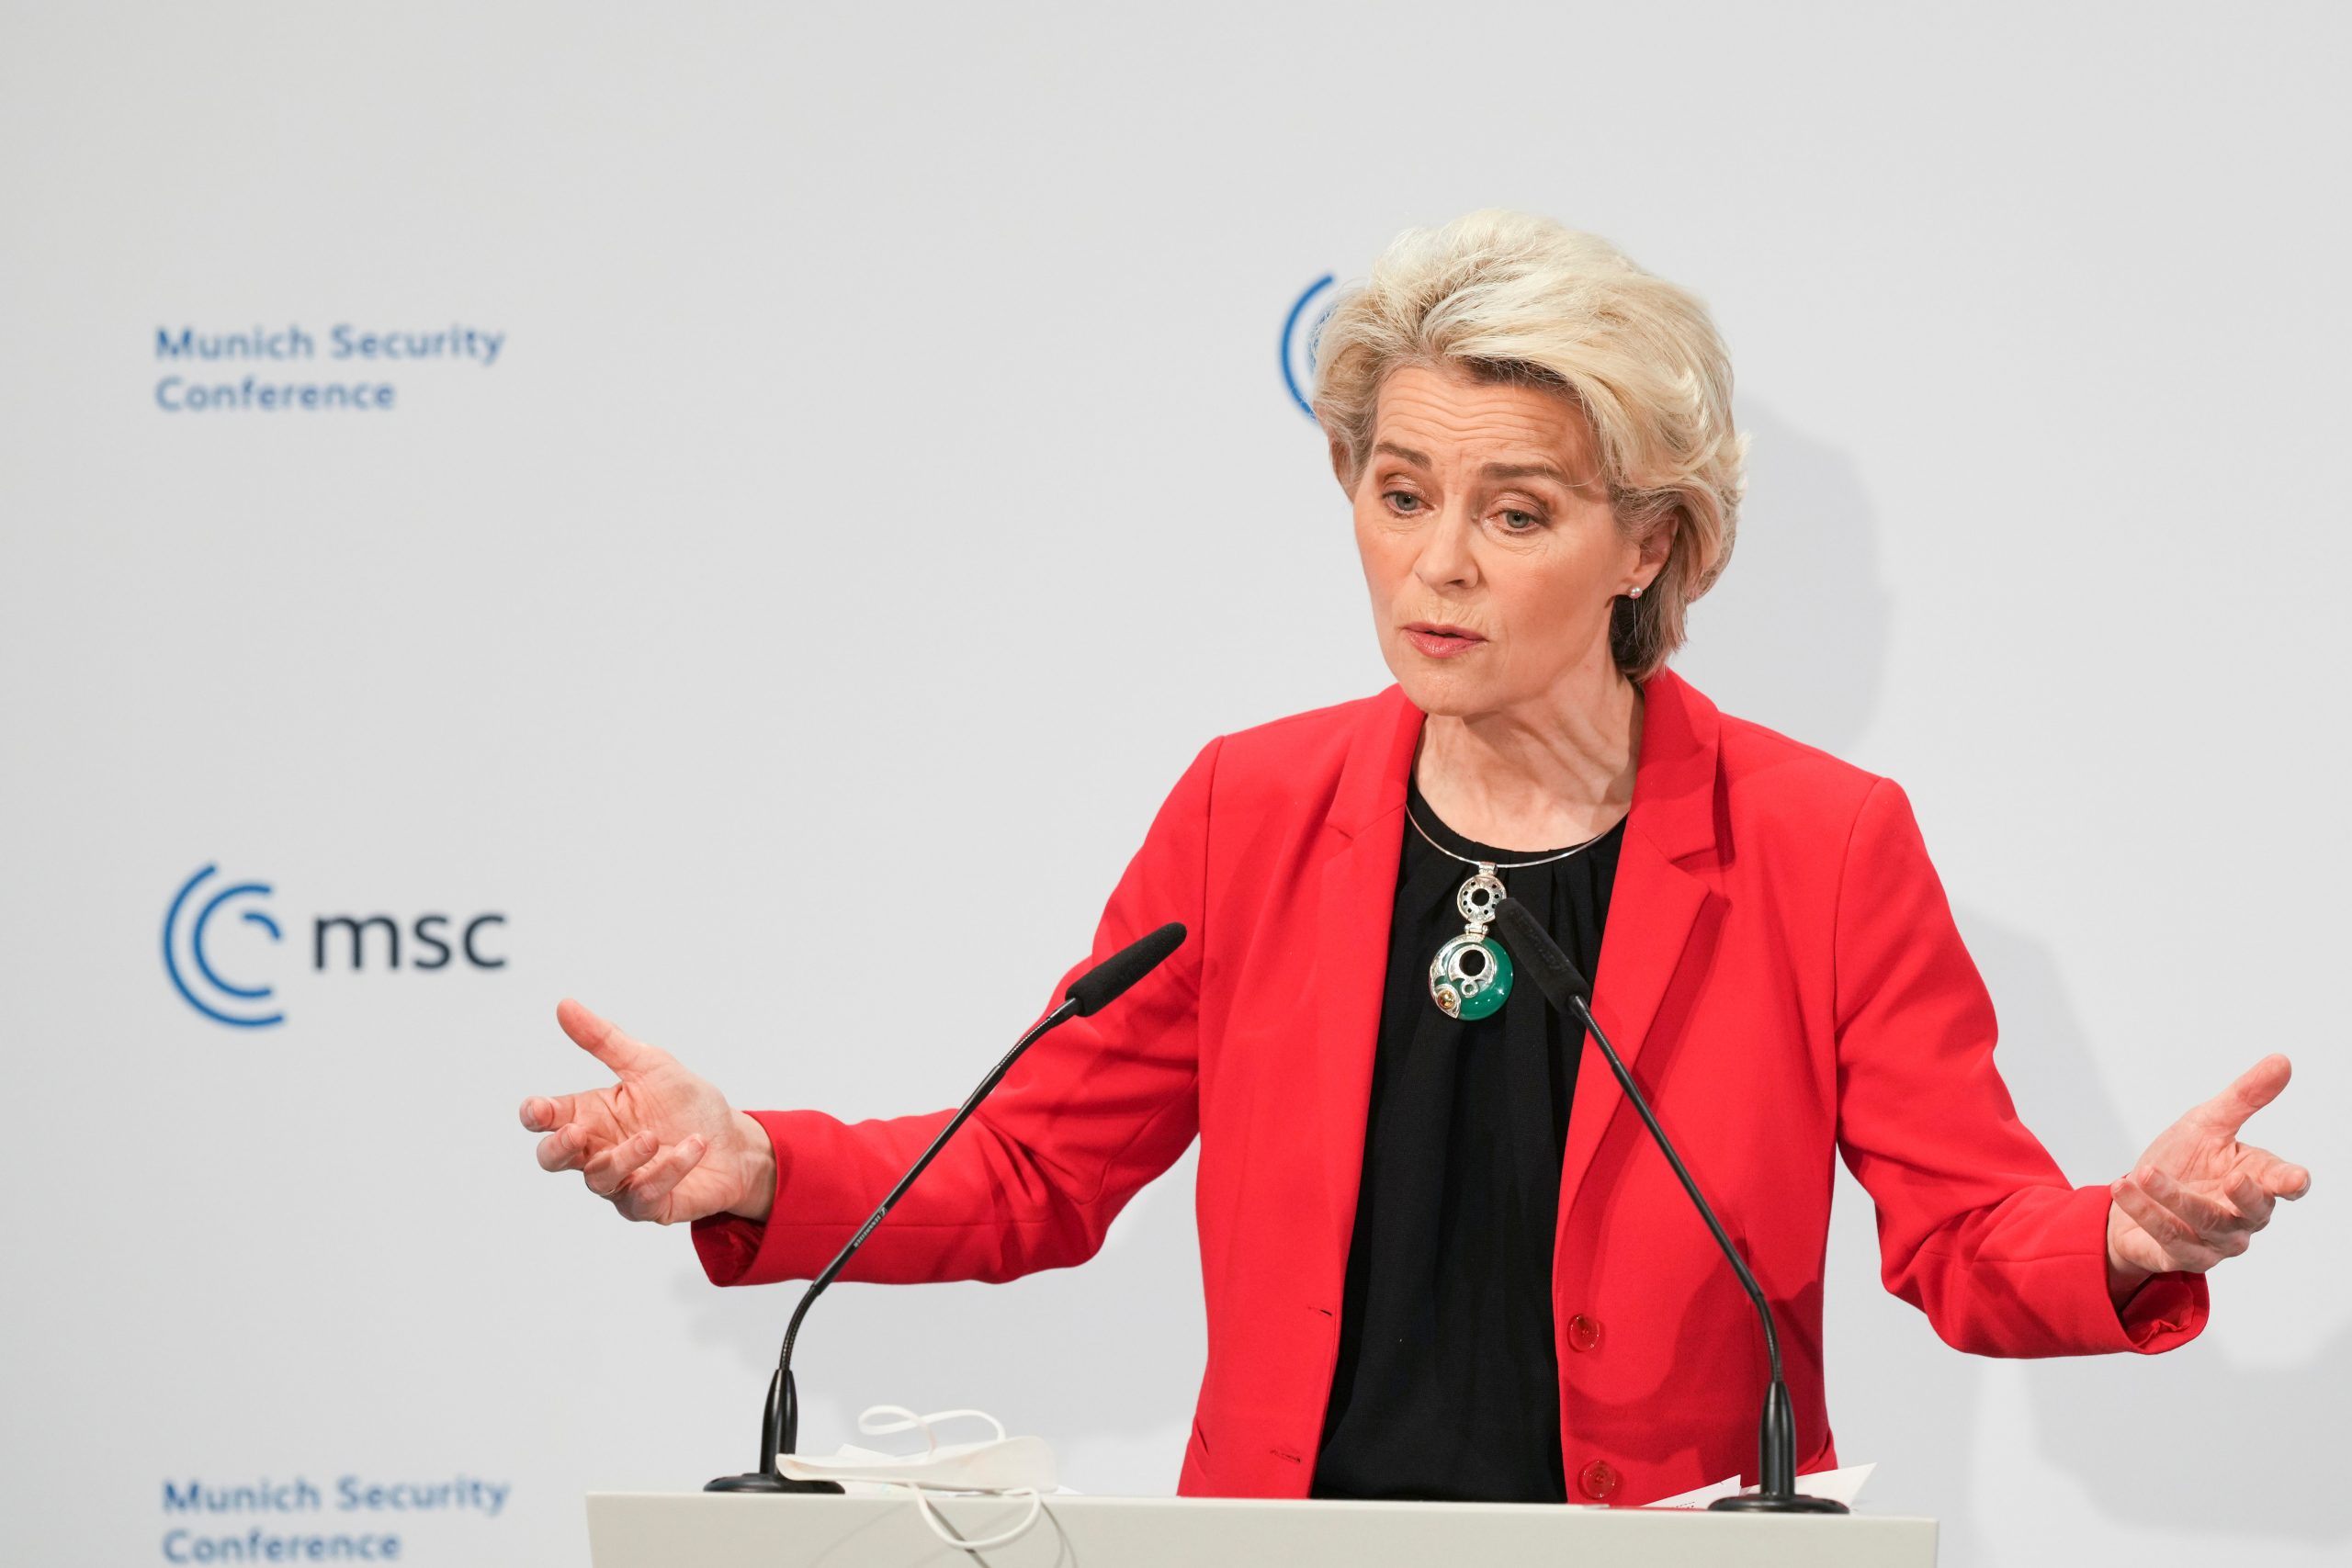 Russia could be cut off from markets, tech goods: EU chief Ursula von der Leyen